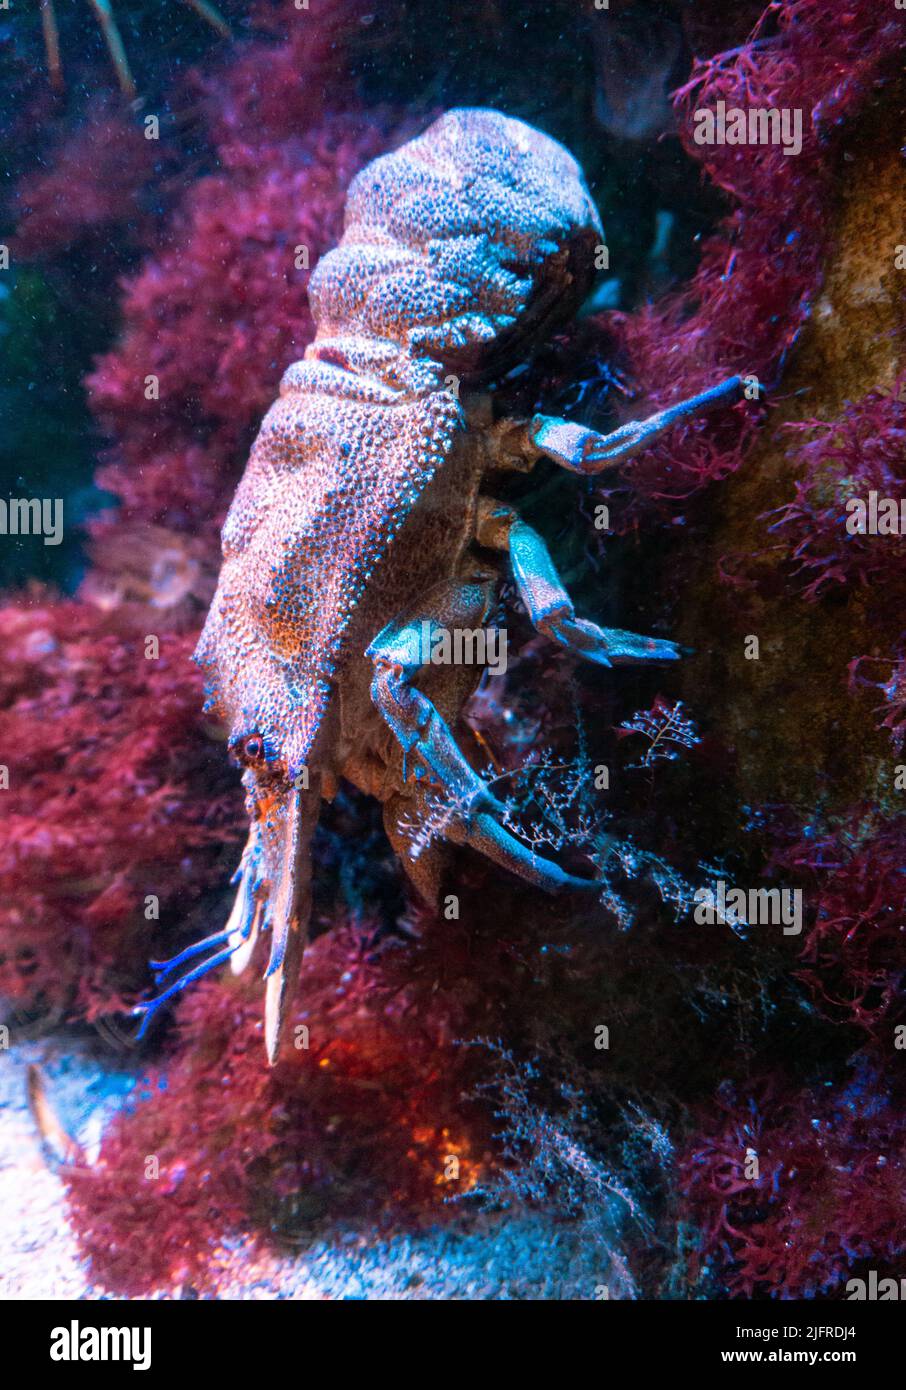 Un gros crustacé avec de nombreuses pattes et des pinces massives descend une pierre pleine de coraux et de plantes multicolores. Banque D'Images